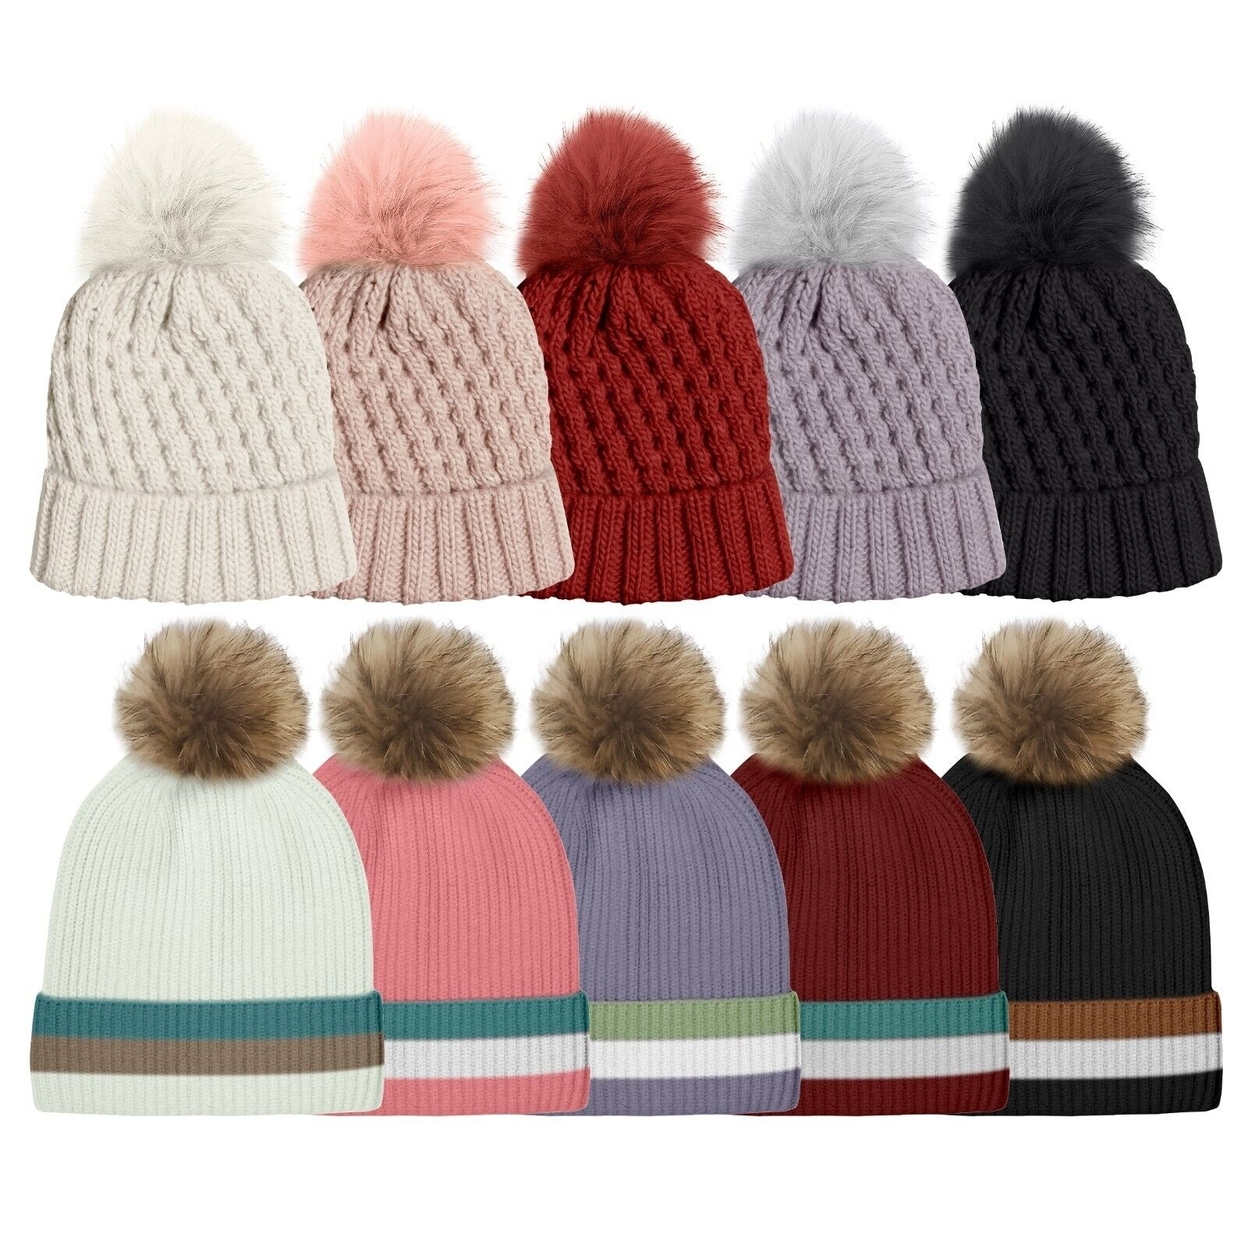 Multi-Pack: Women's Ultra-Soft Winter Warm Knit Feel Pom Pom Hat W/ Faux Fur Lining - Striped, 1-pack